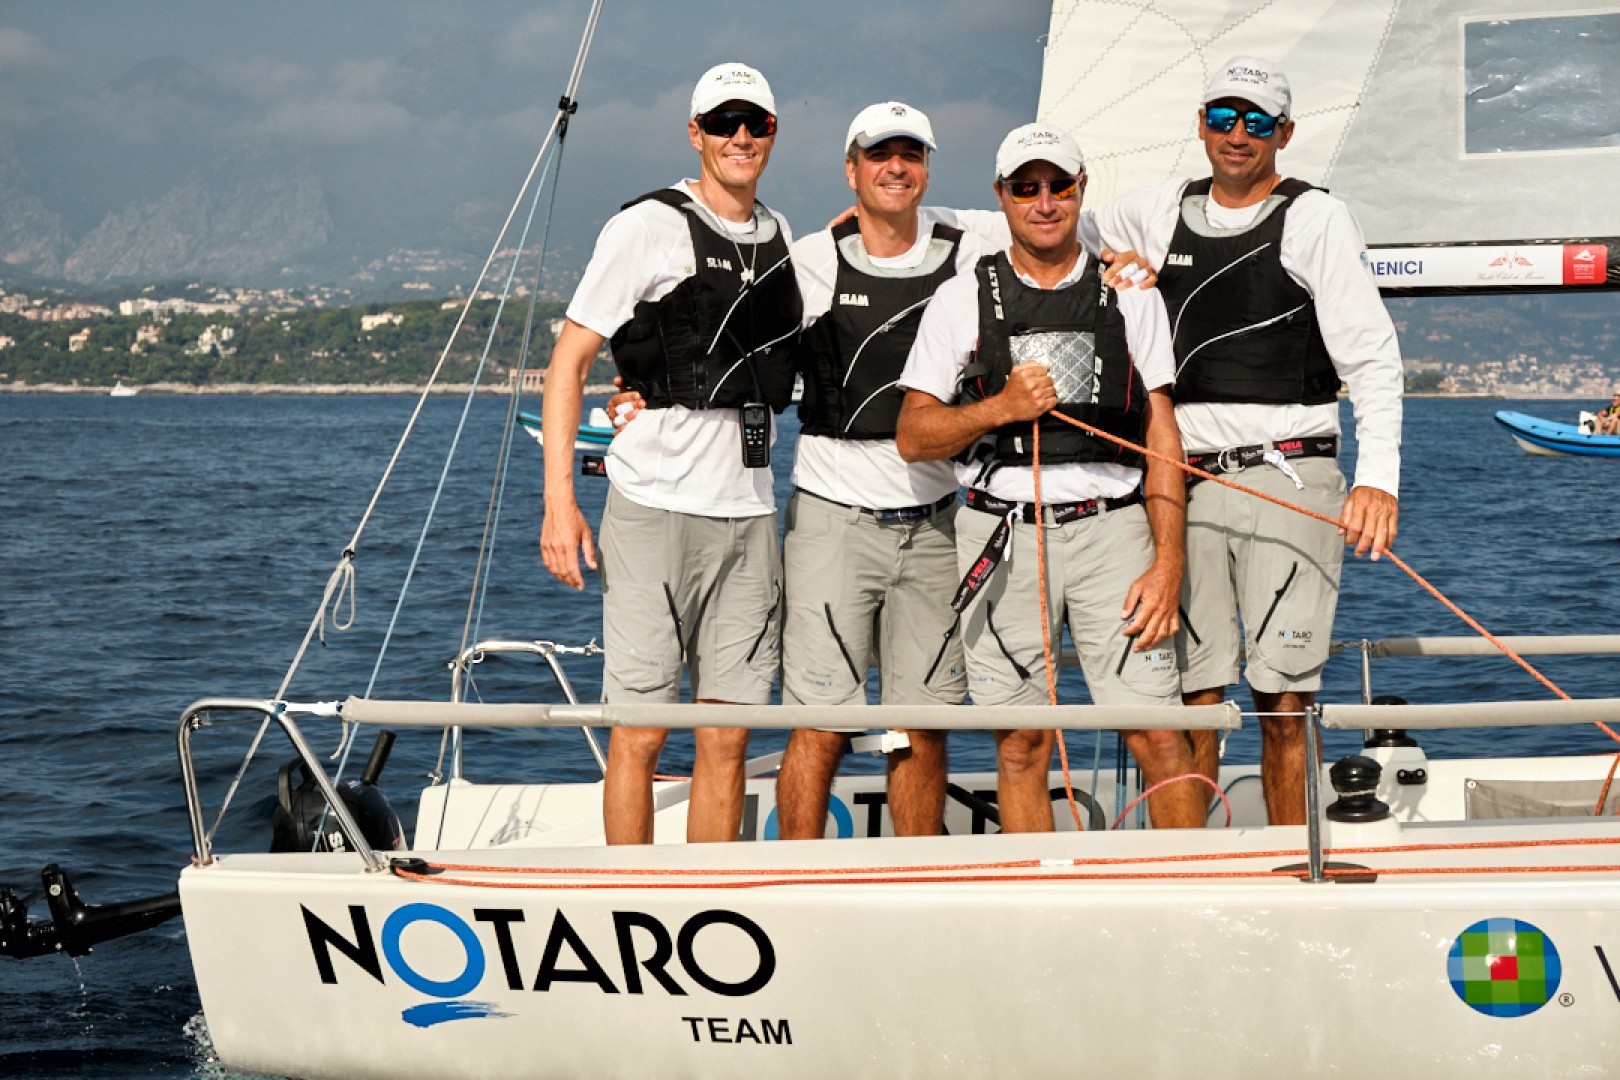 Notaro Team Wolters Kluwer ph Yacht Club de Monaco